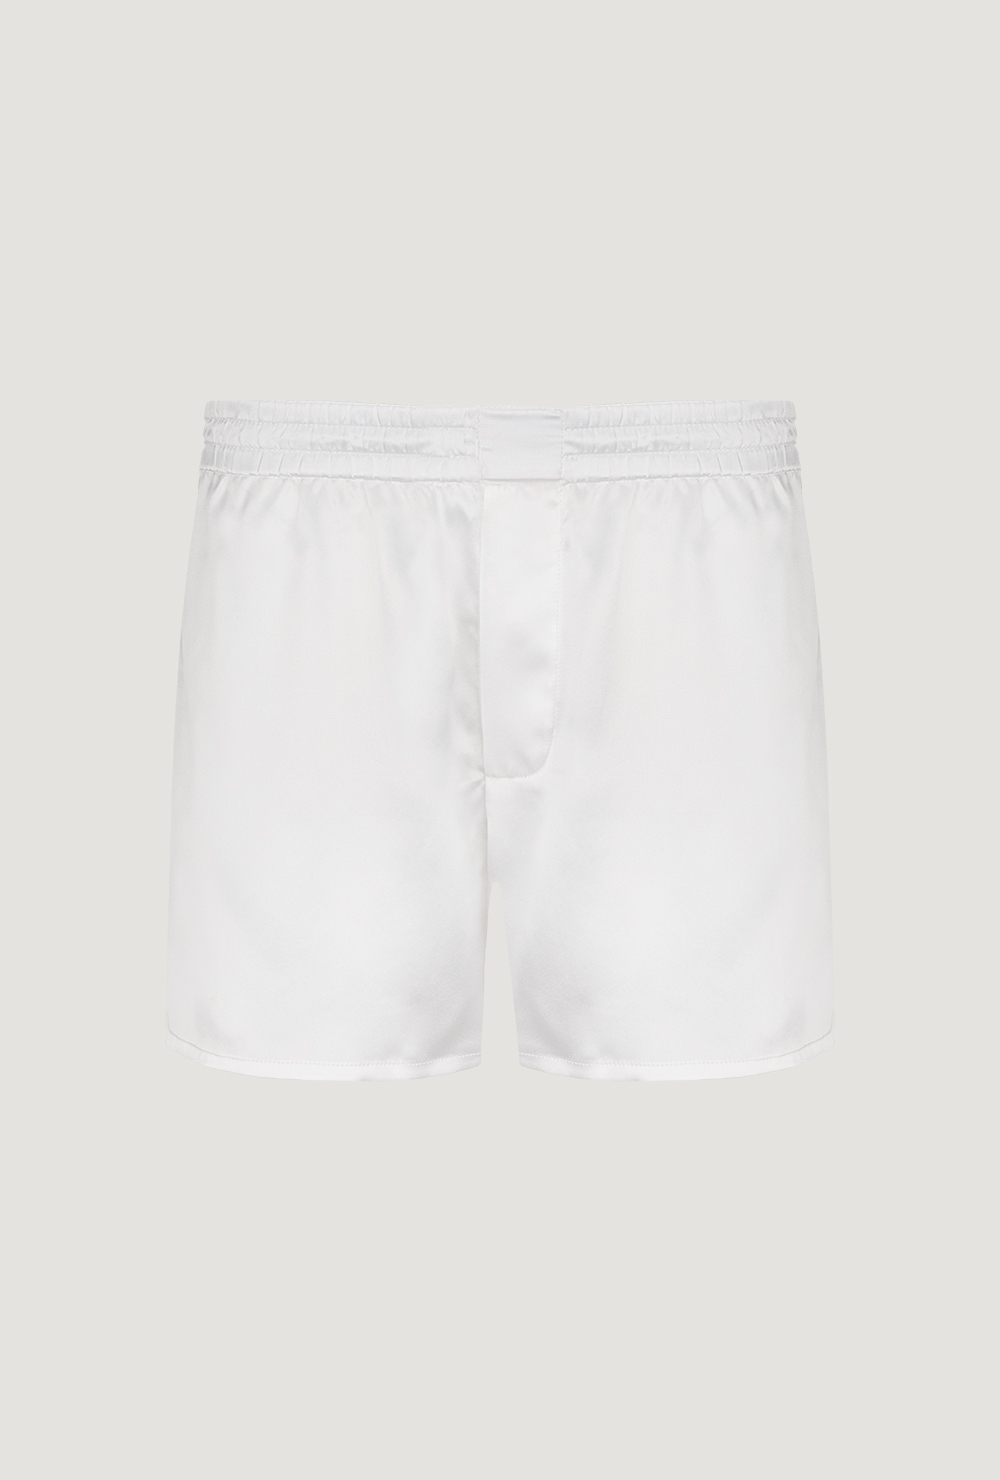 Men's silk white boxers